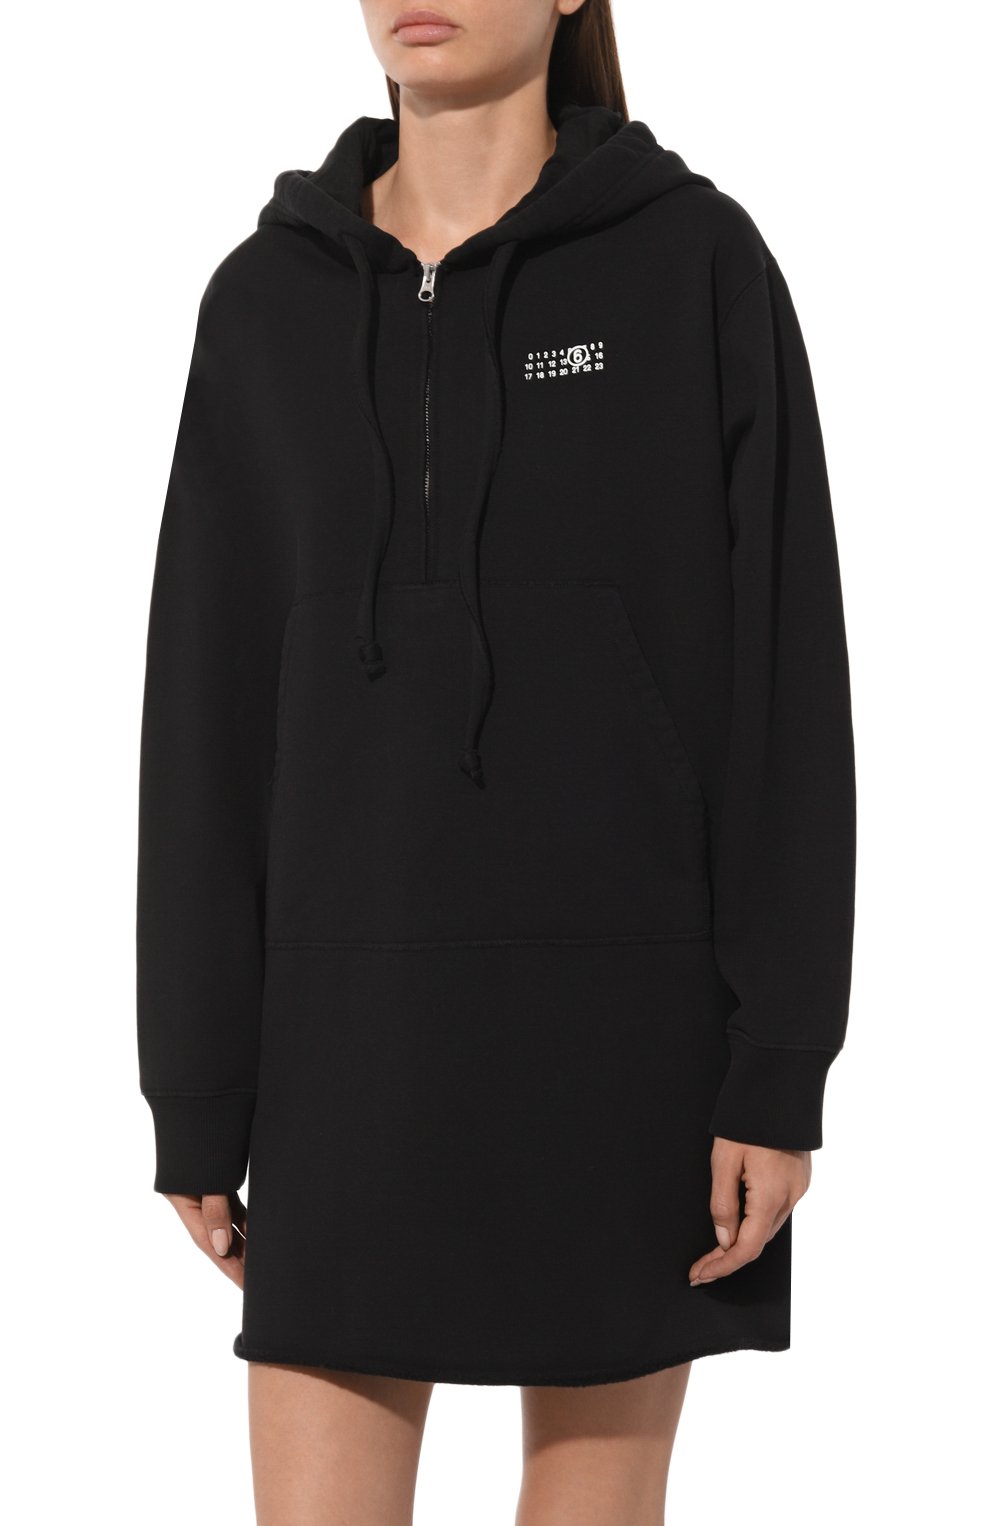 Черные короткие кружевные платья — купить в интернет-магазине Ламода